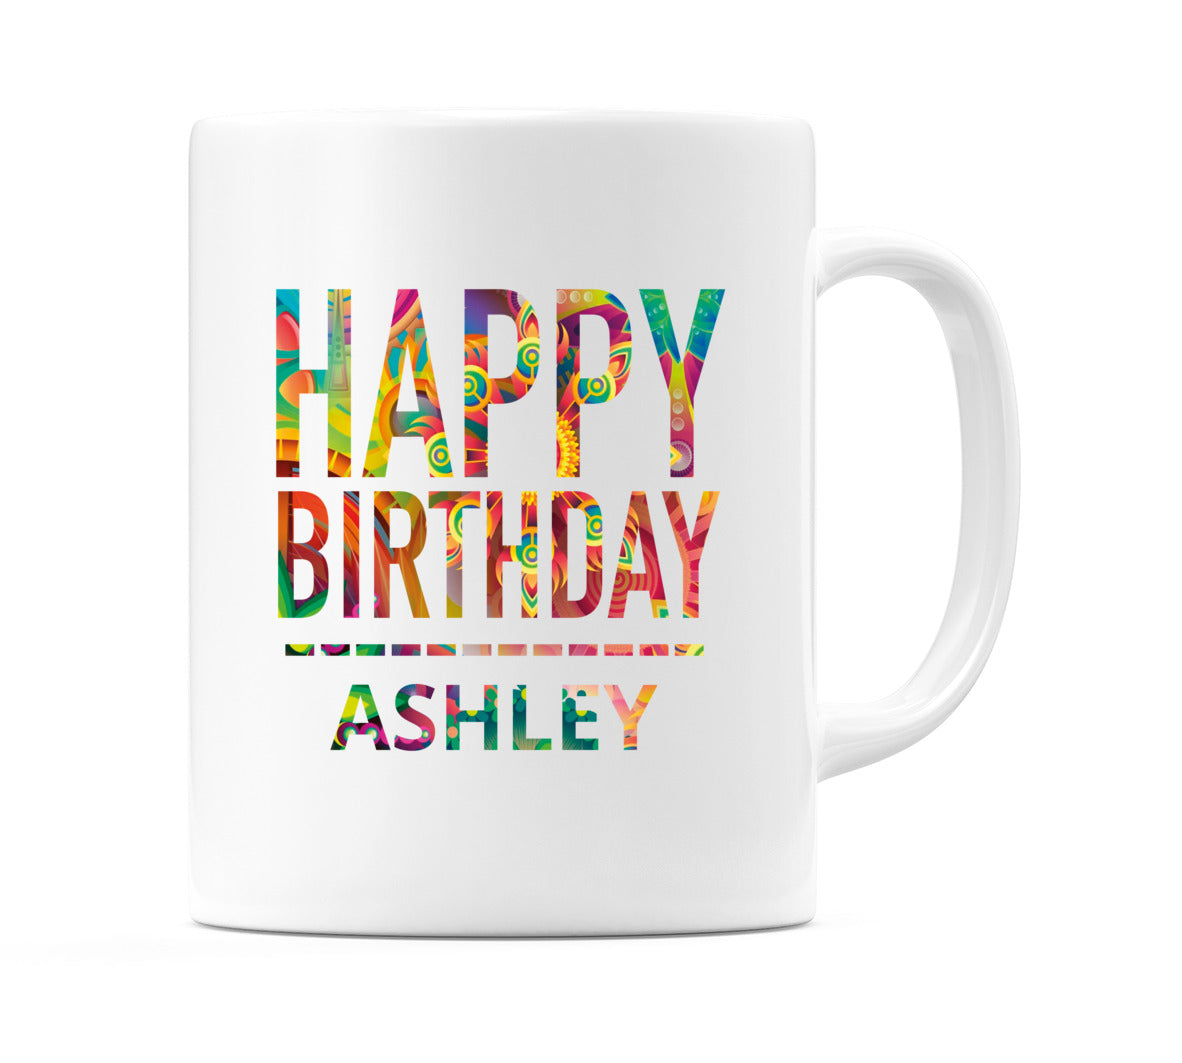 Happy Birthday Ashley (Tie Dye Effect) Mug Cup by WeDoMugs